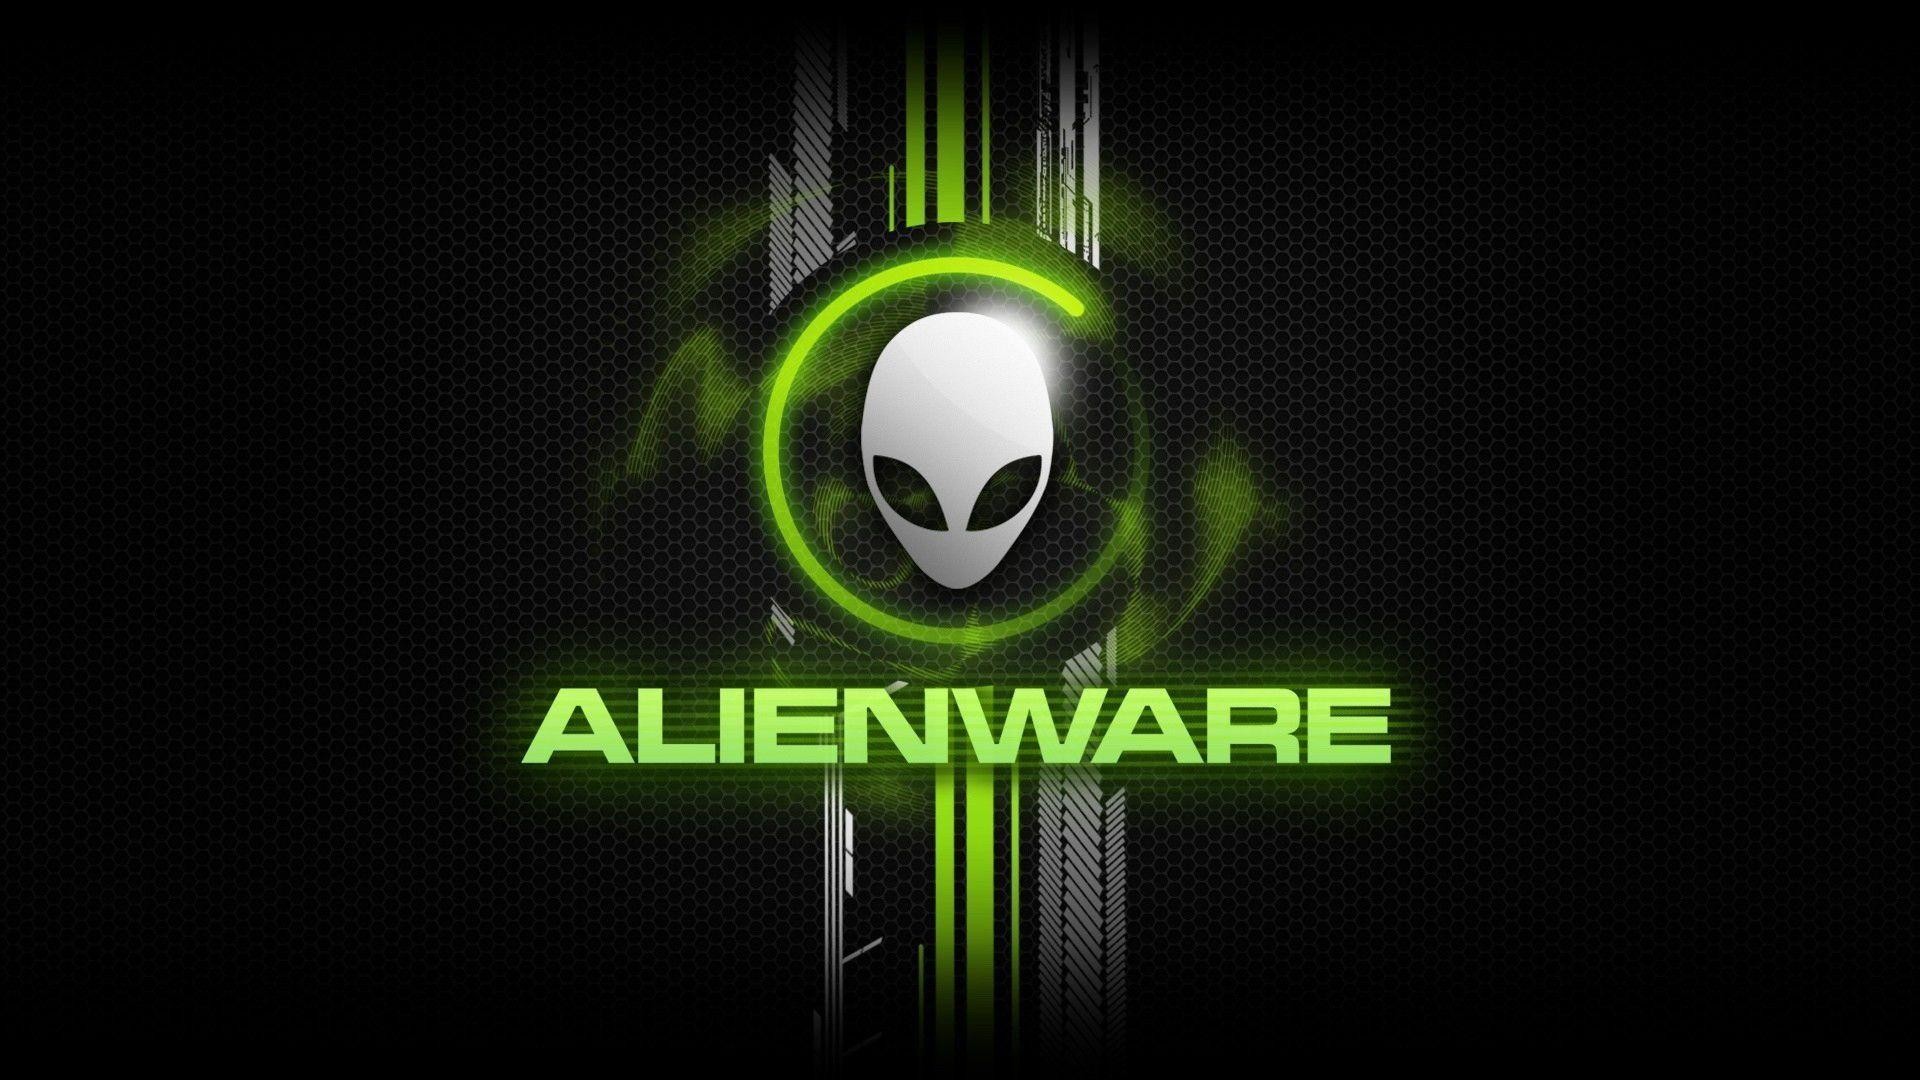 1920x1080 HD Alienware Wallpapers  & Alienware Backgrounds for .